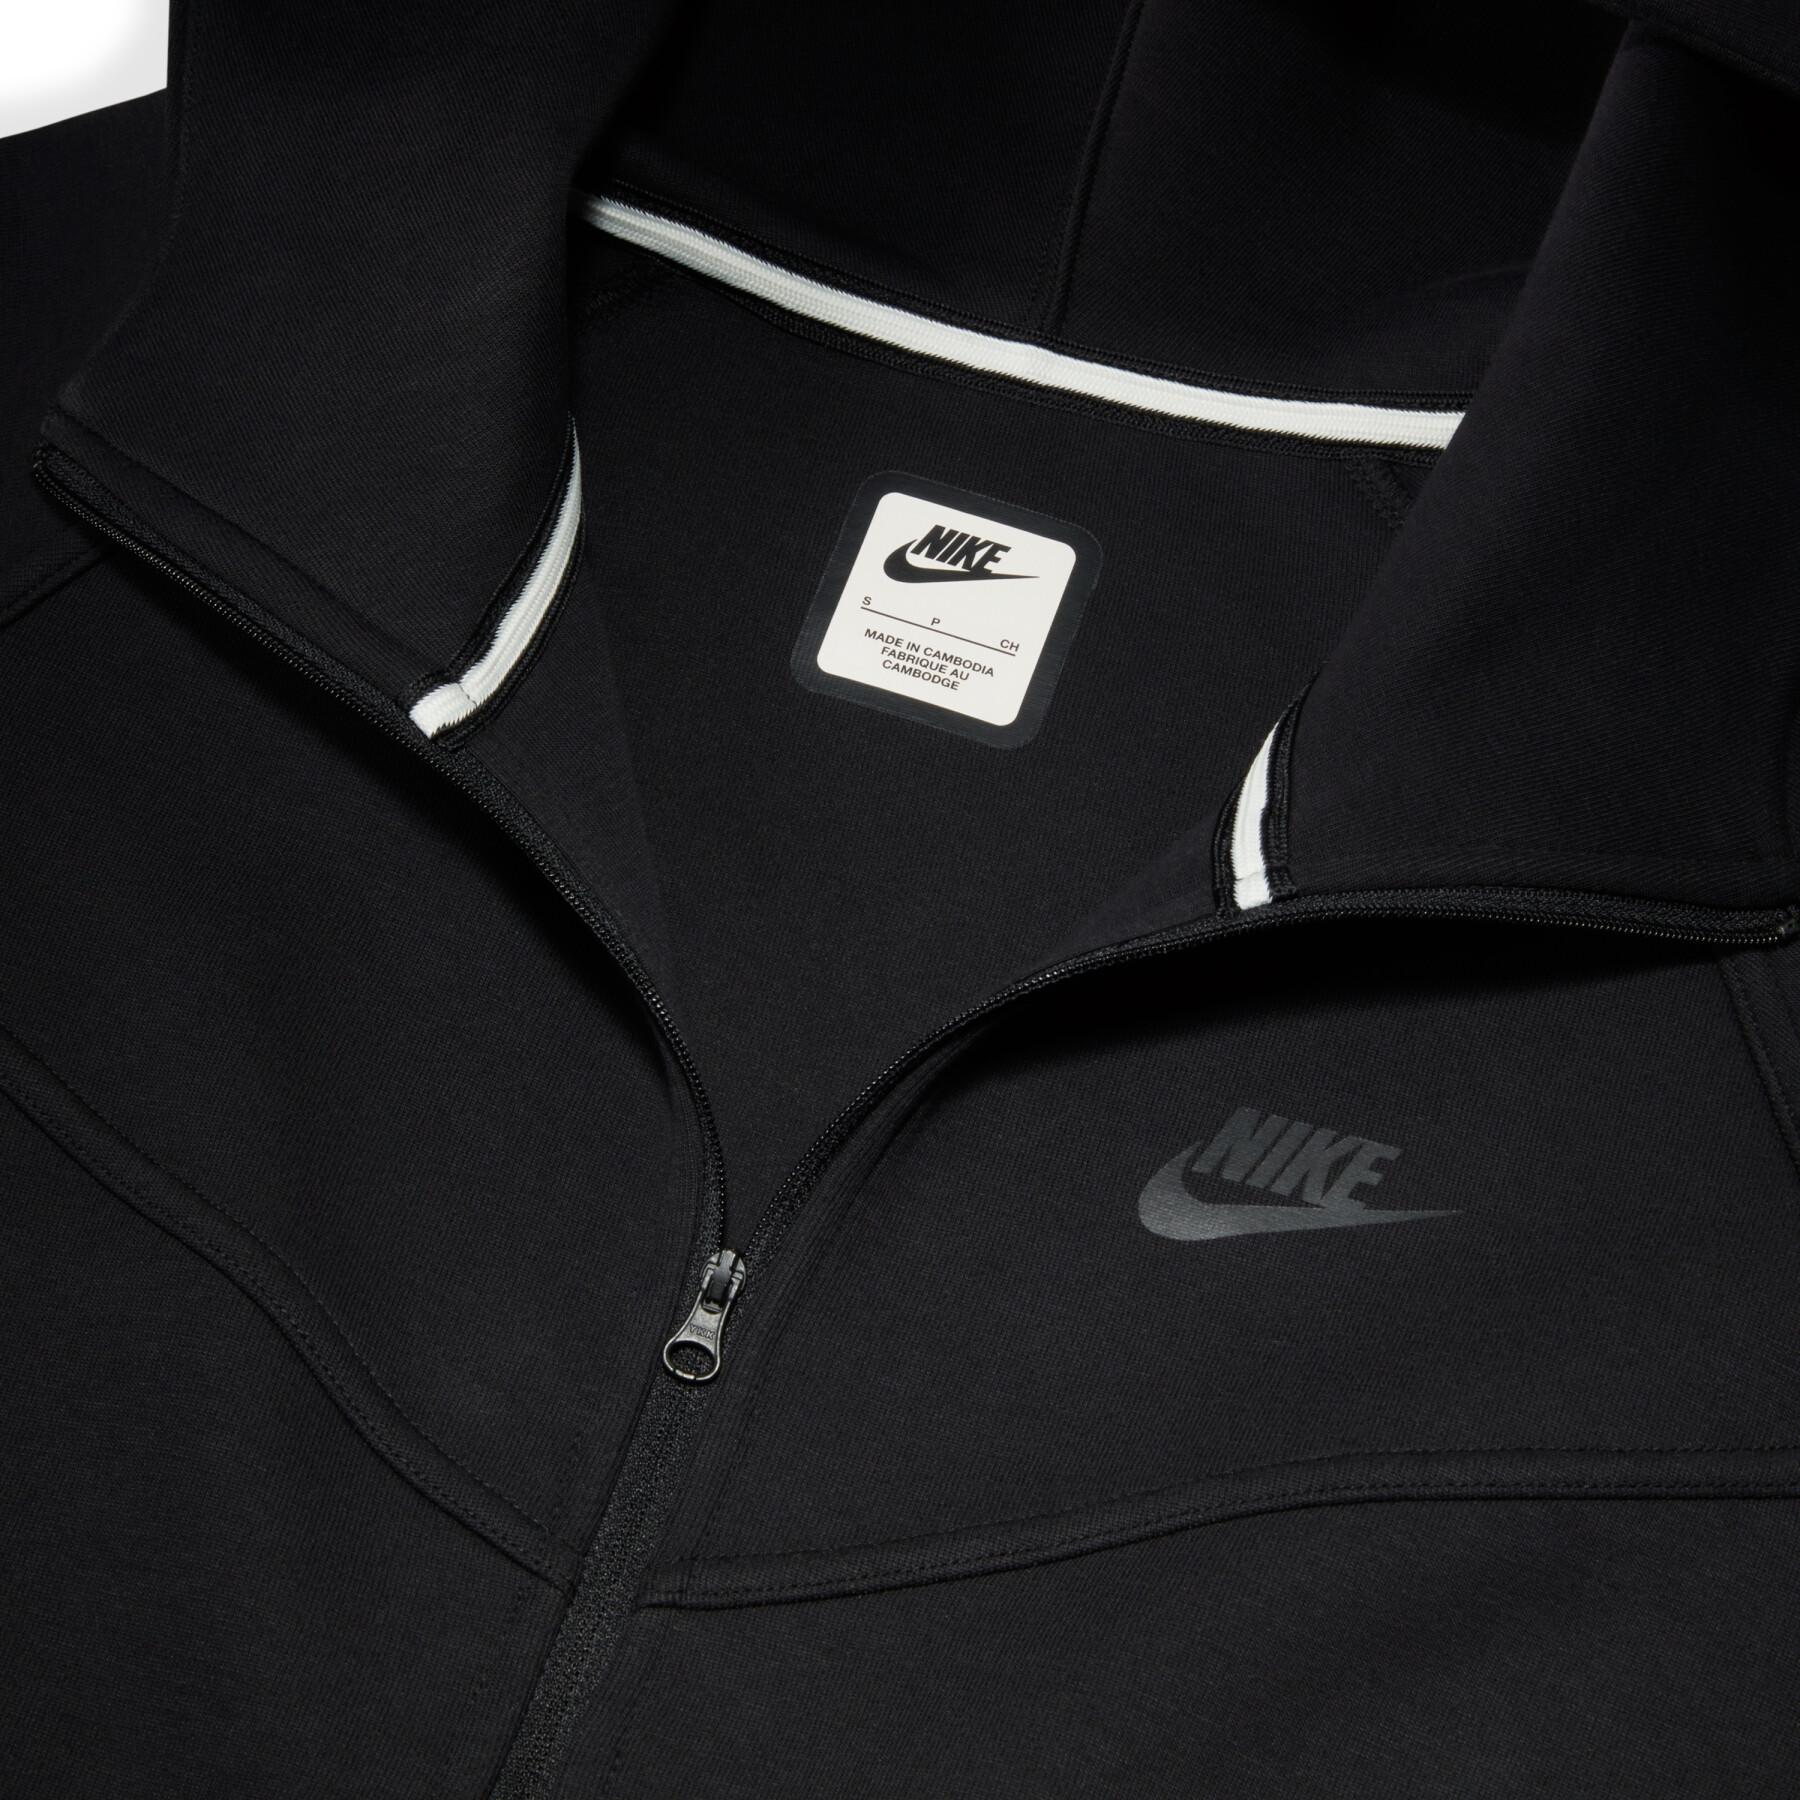 Women's Hooded Sweat Jacket Nike Tech Fleece Windrunner